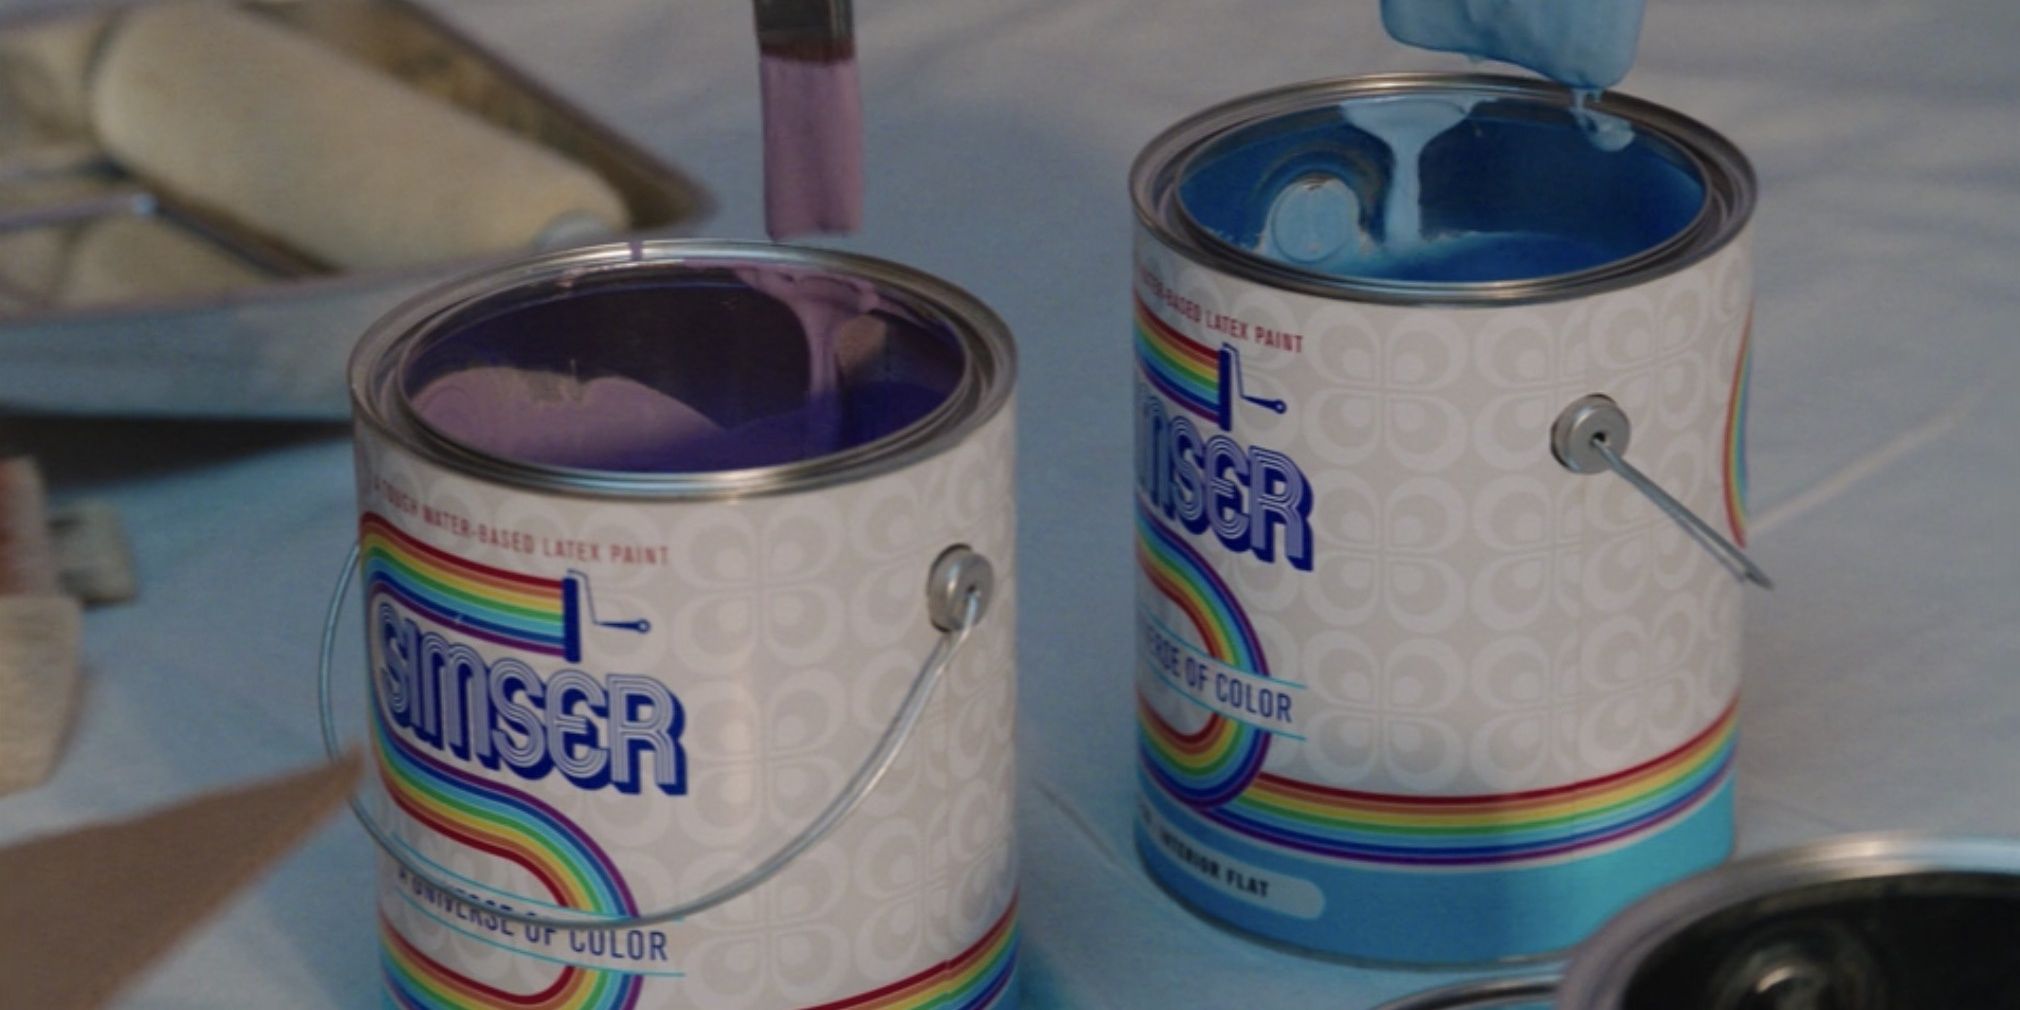 wandavision episode 3 paint cans